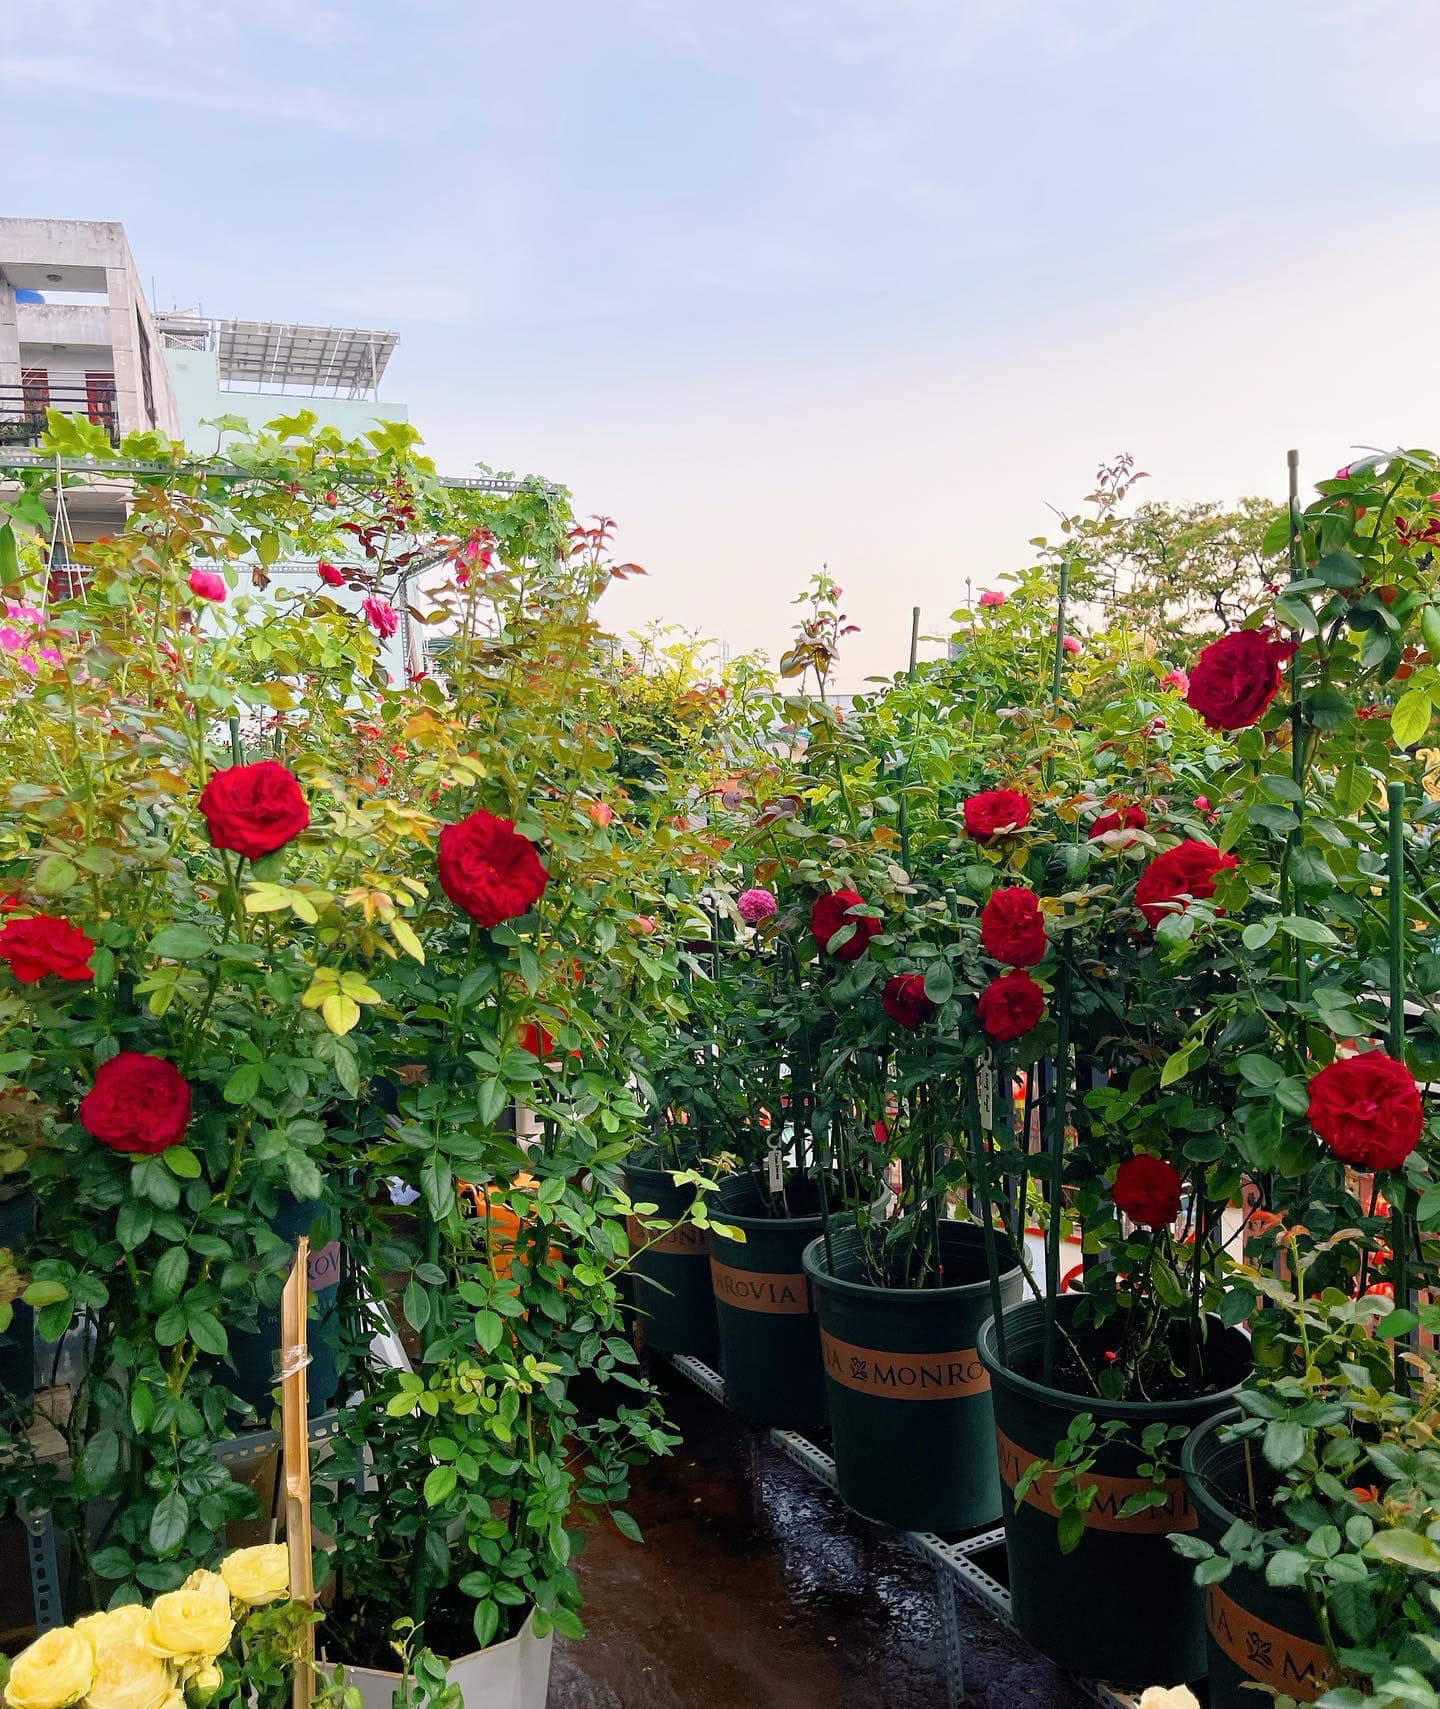 Khu vườn hoa hồng đẹp ngây ngất trên sân thượng ở TP HCM - Ảnh 4.